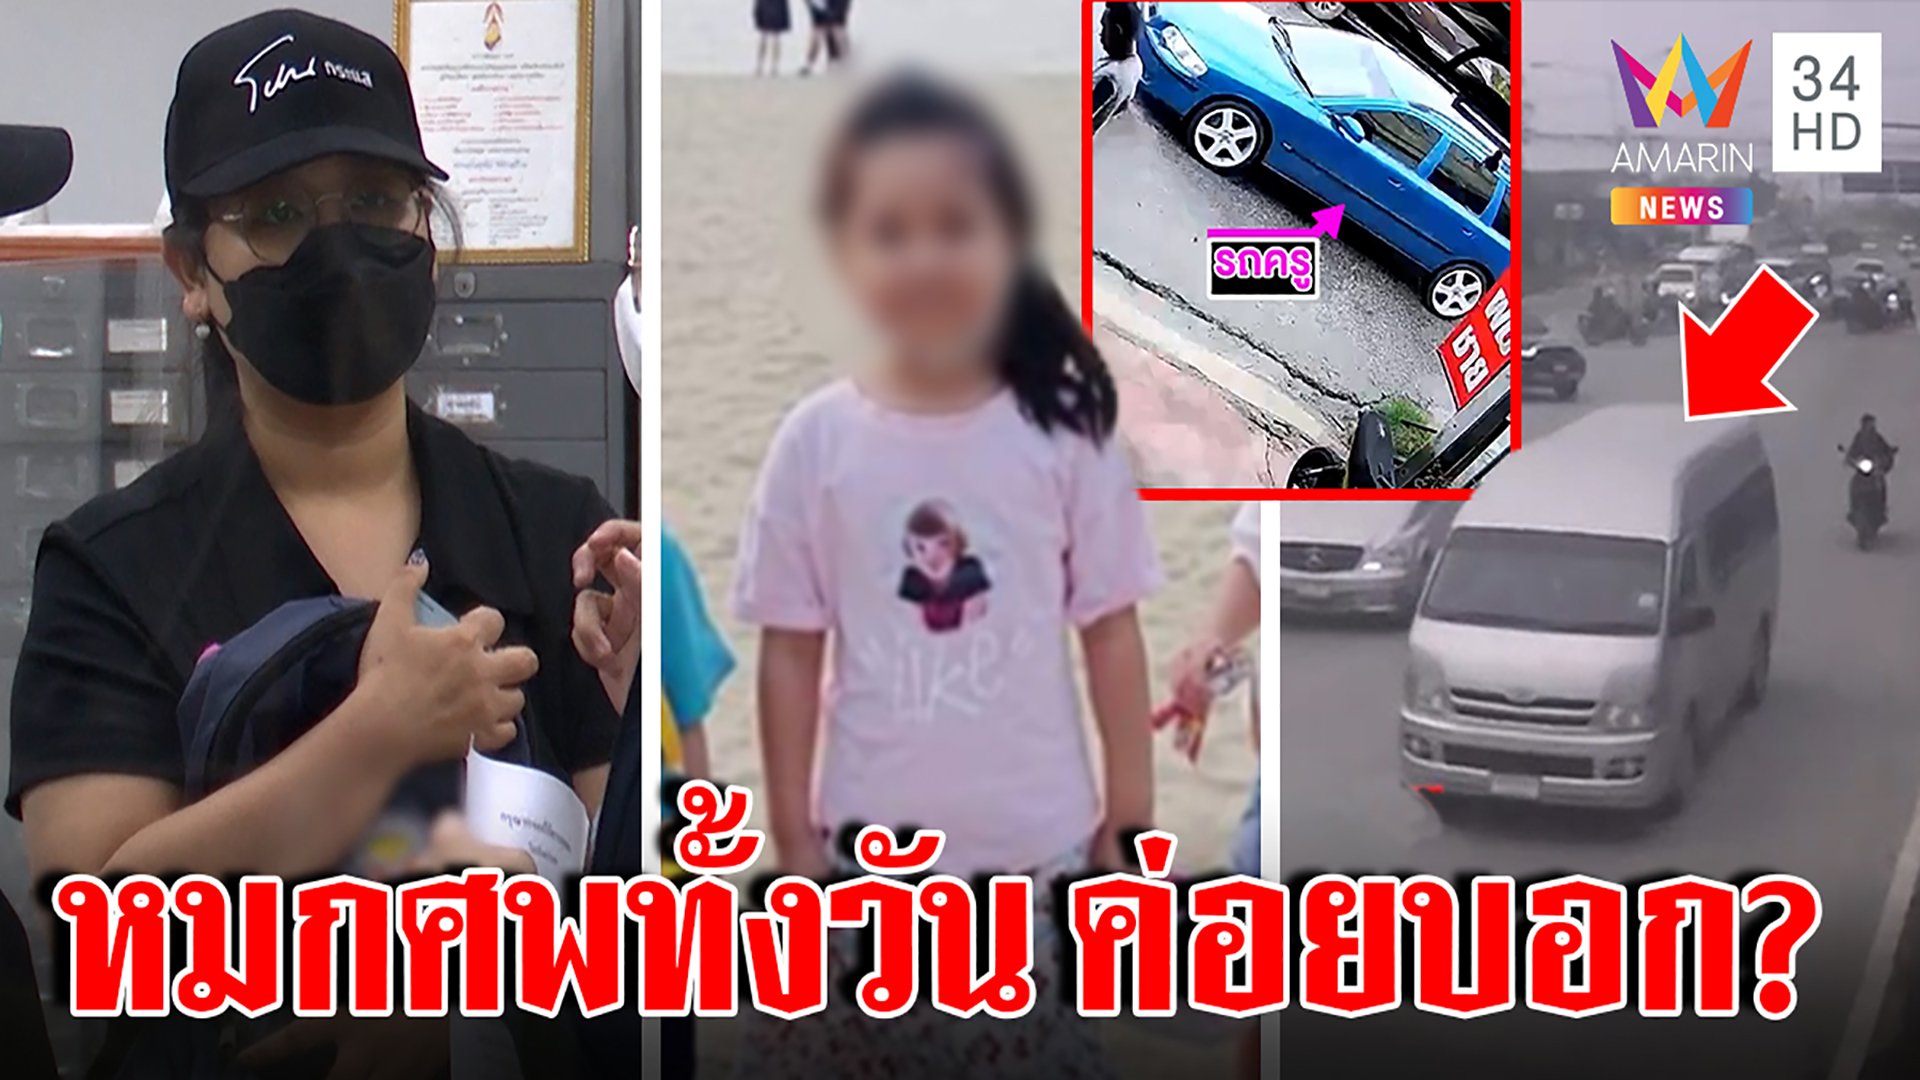 แม่จีฮุนจ่อผ่าศพลูก ร้อนตายในรถไร้เหงื่อ แฉหลักฐานครูโผล่บ้านไม่พูดความจริง | ทุบโต๊ะข่าว | 1 ก.ย. 65 | AMARIN TVHD34